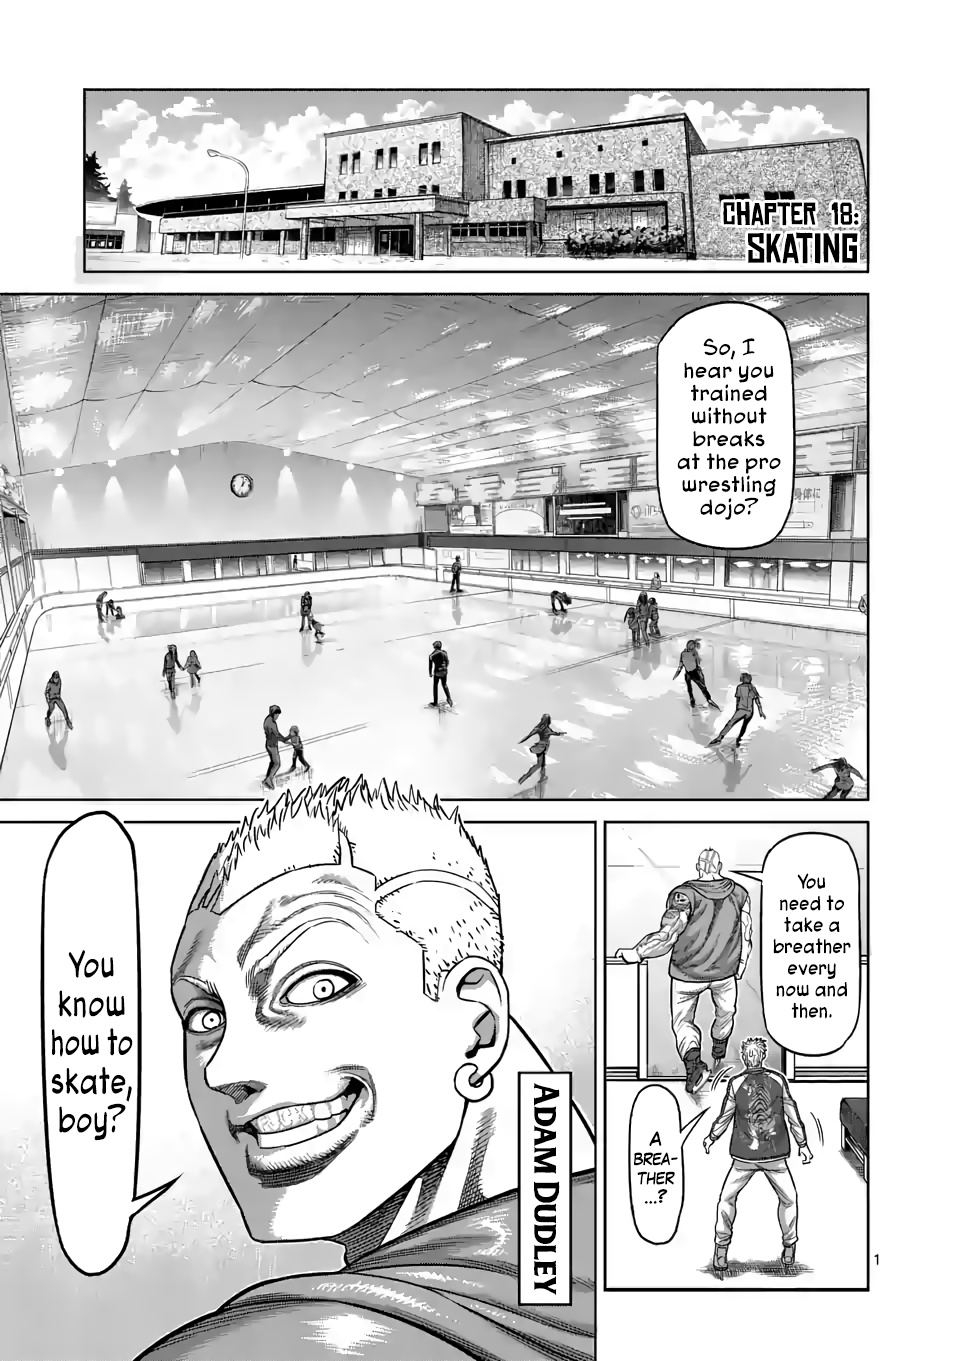 Kengan Omega, Chapter 18 Skating image 01